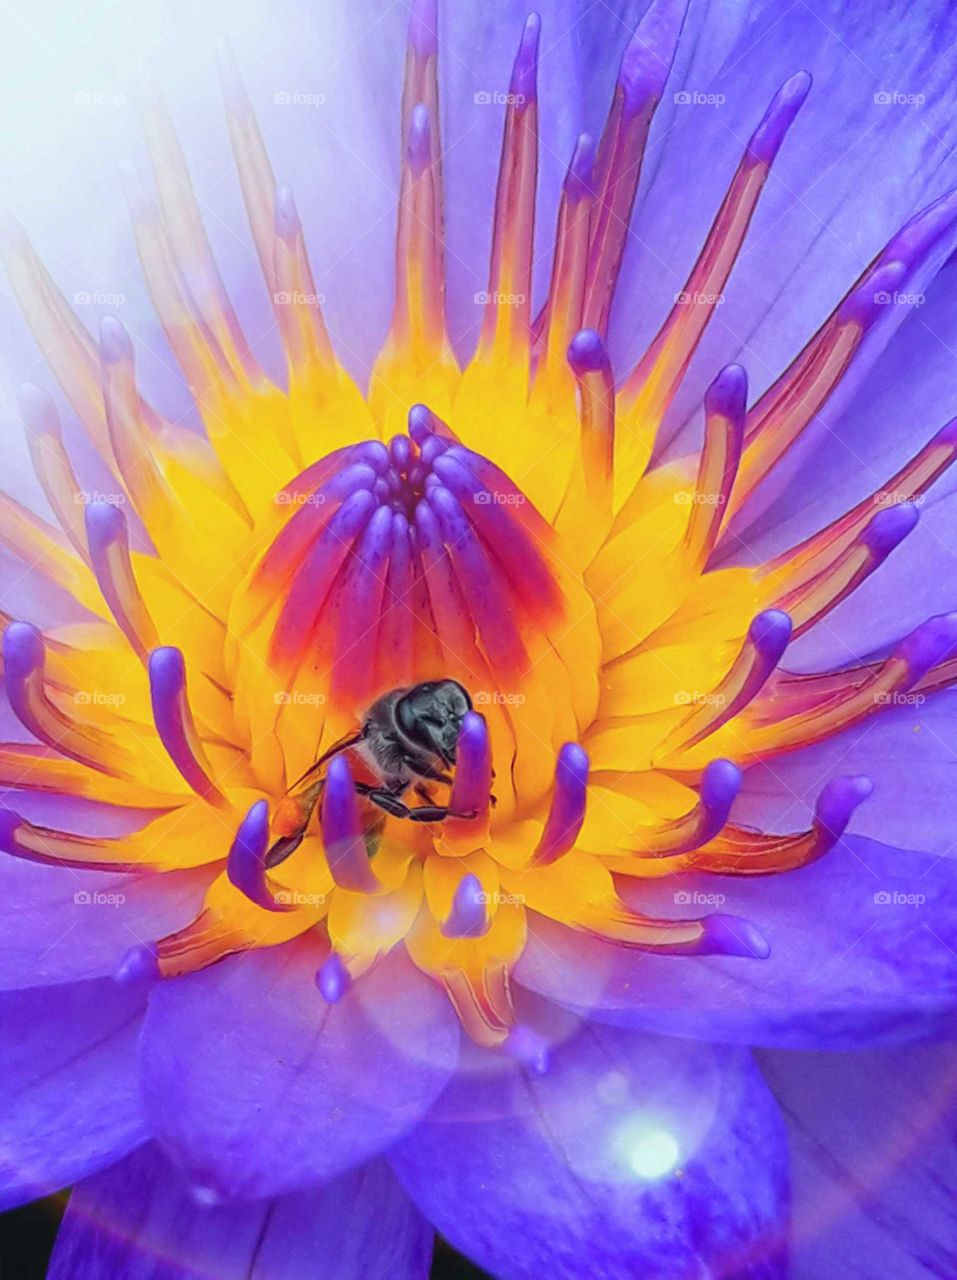 bee in lotus